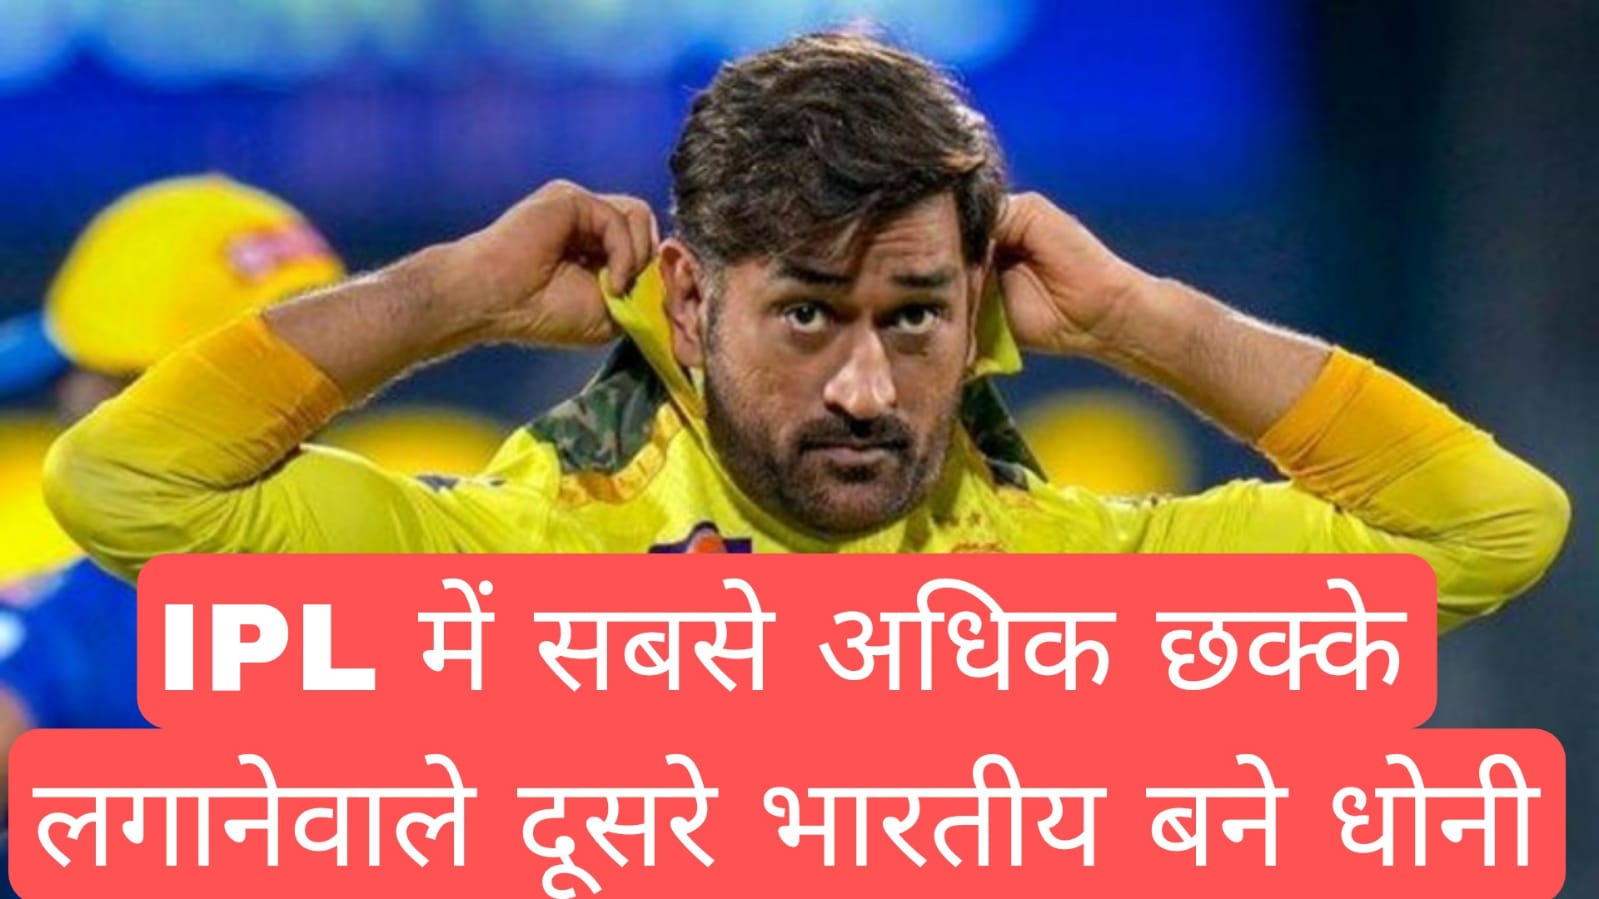 IPL में सबसे अधिक छक्के लगानेवाले दूसरे भारतीय बने महेंद्र सिंह धोनी 